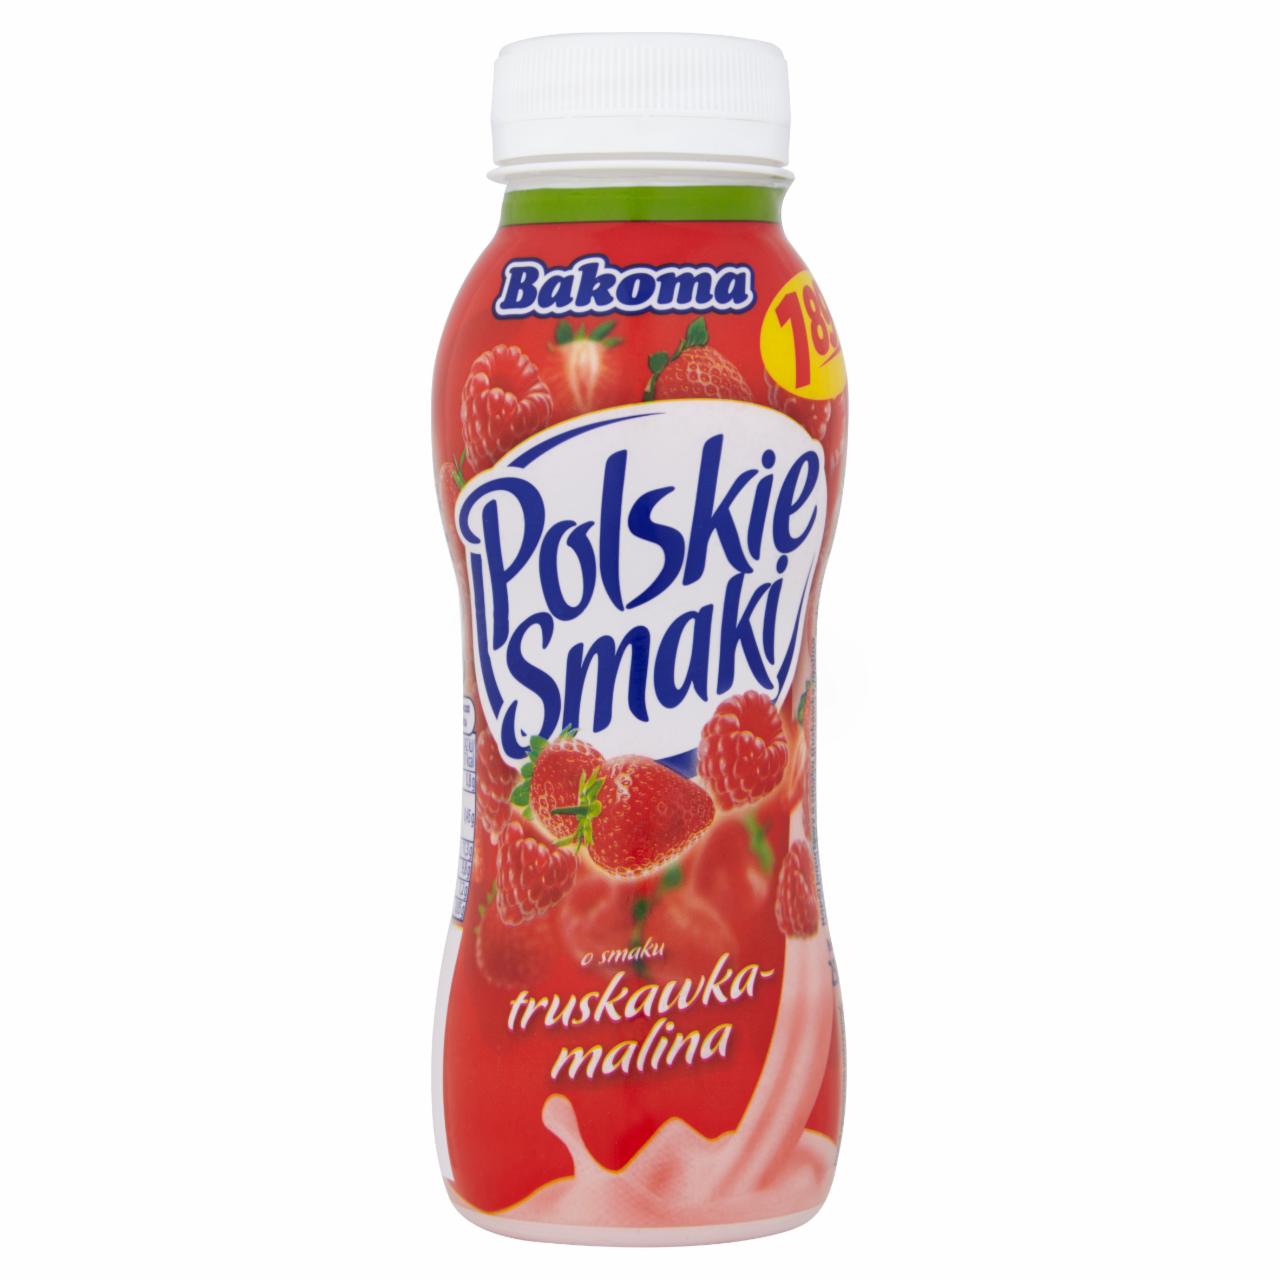 Zdjęcia - Bakoma Polskie Smaki Napój jogurtowy o smaku truskawka-malina 250 g